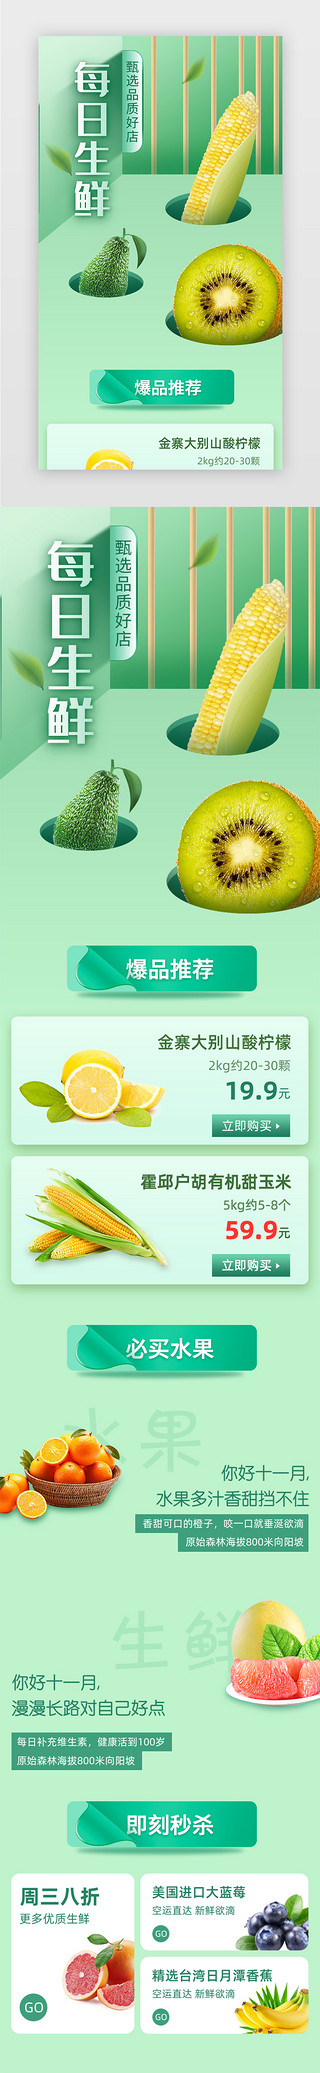 生鲜副食UI设计素材_绿色小清新水果生鲜H5活动页